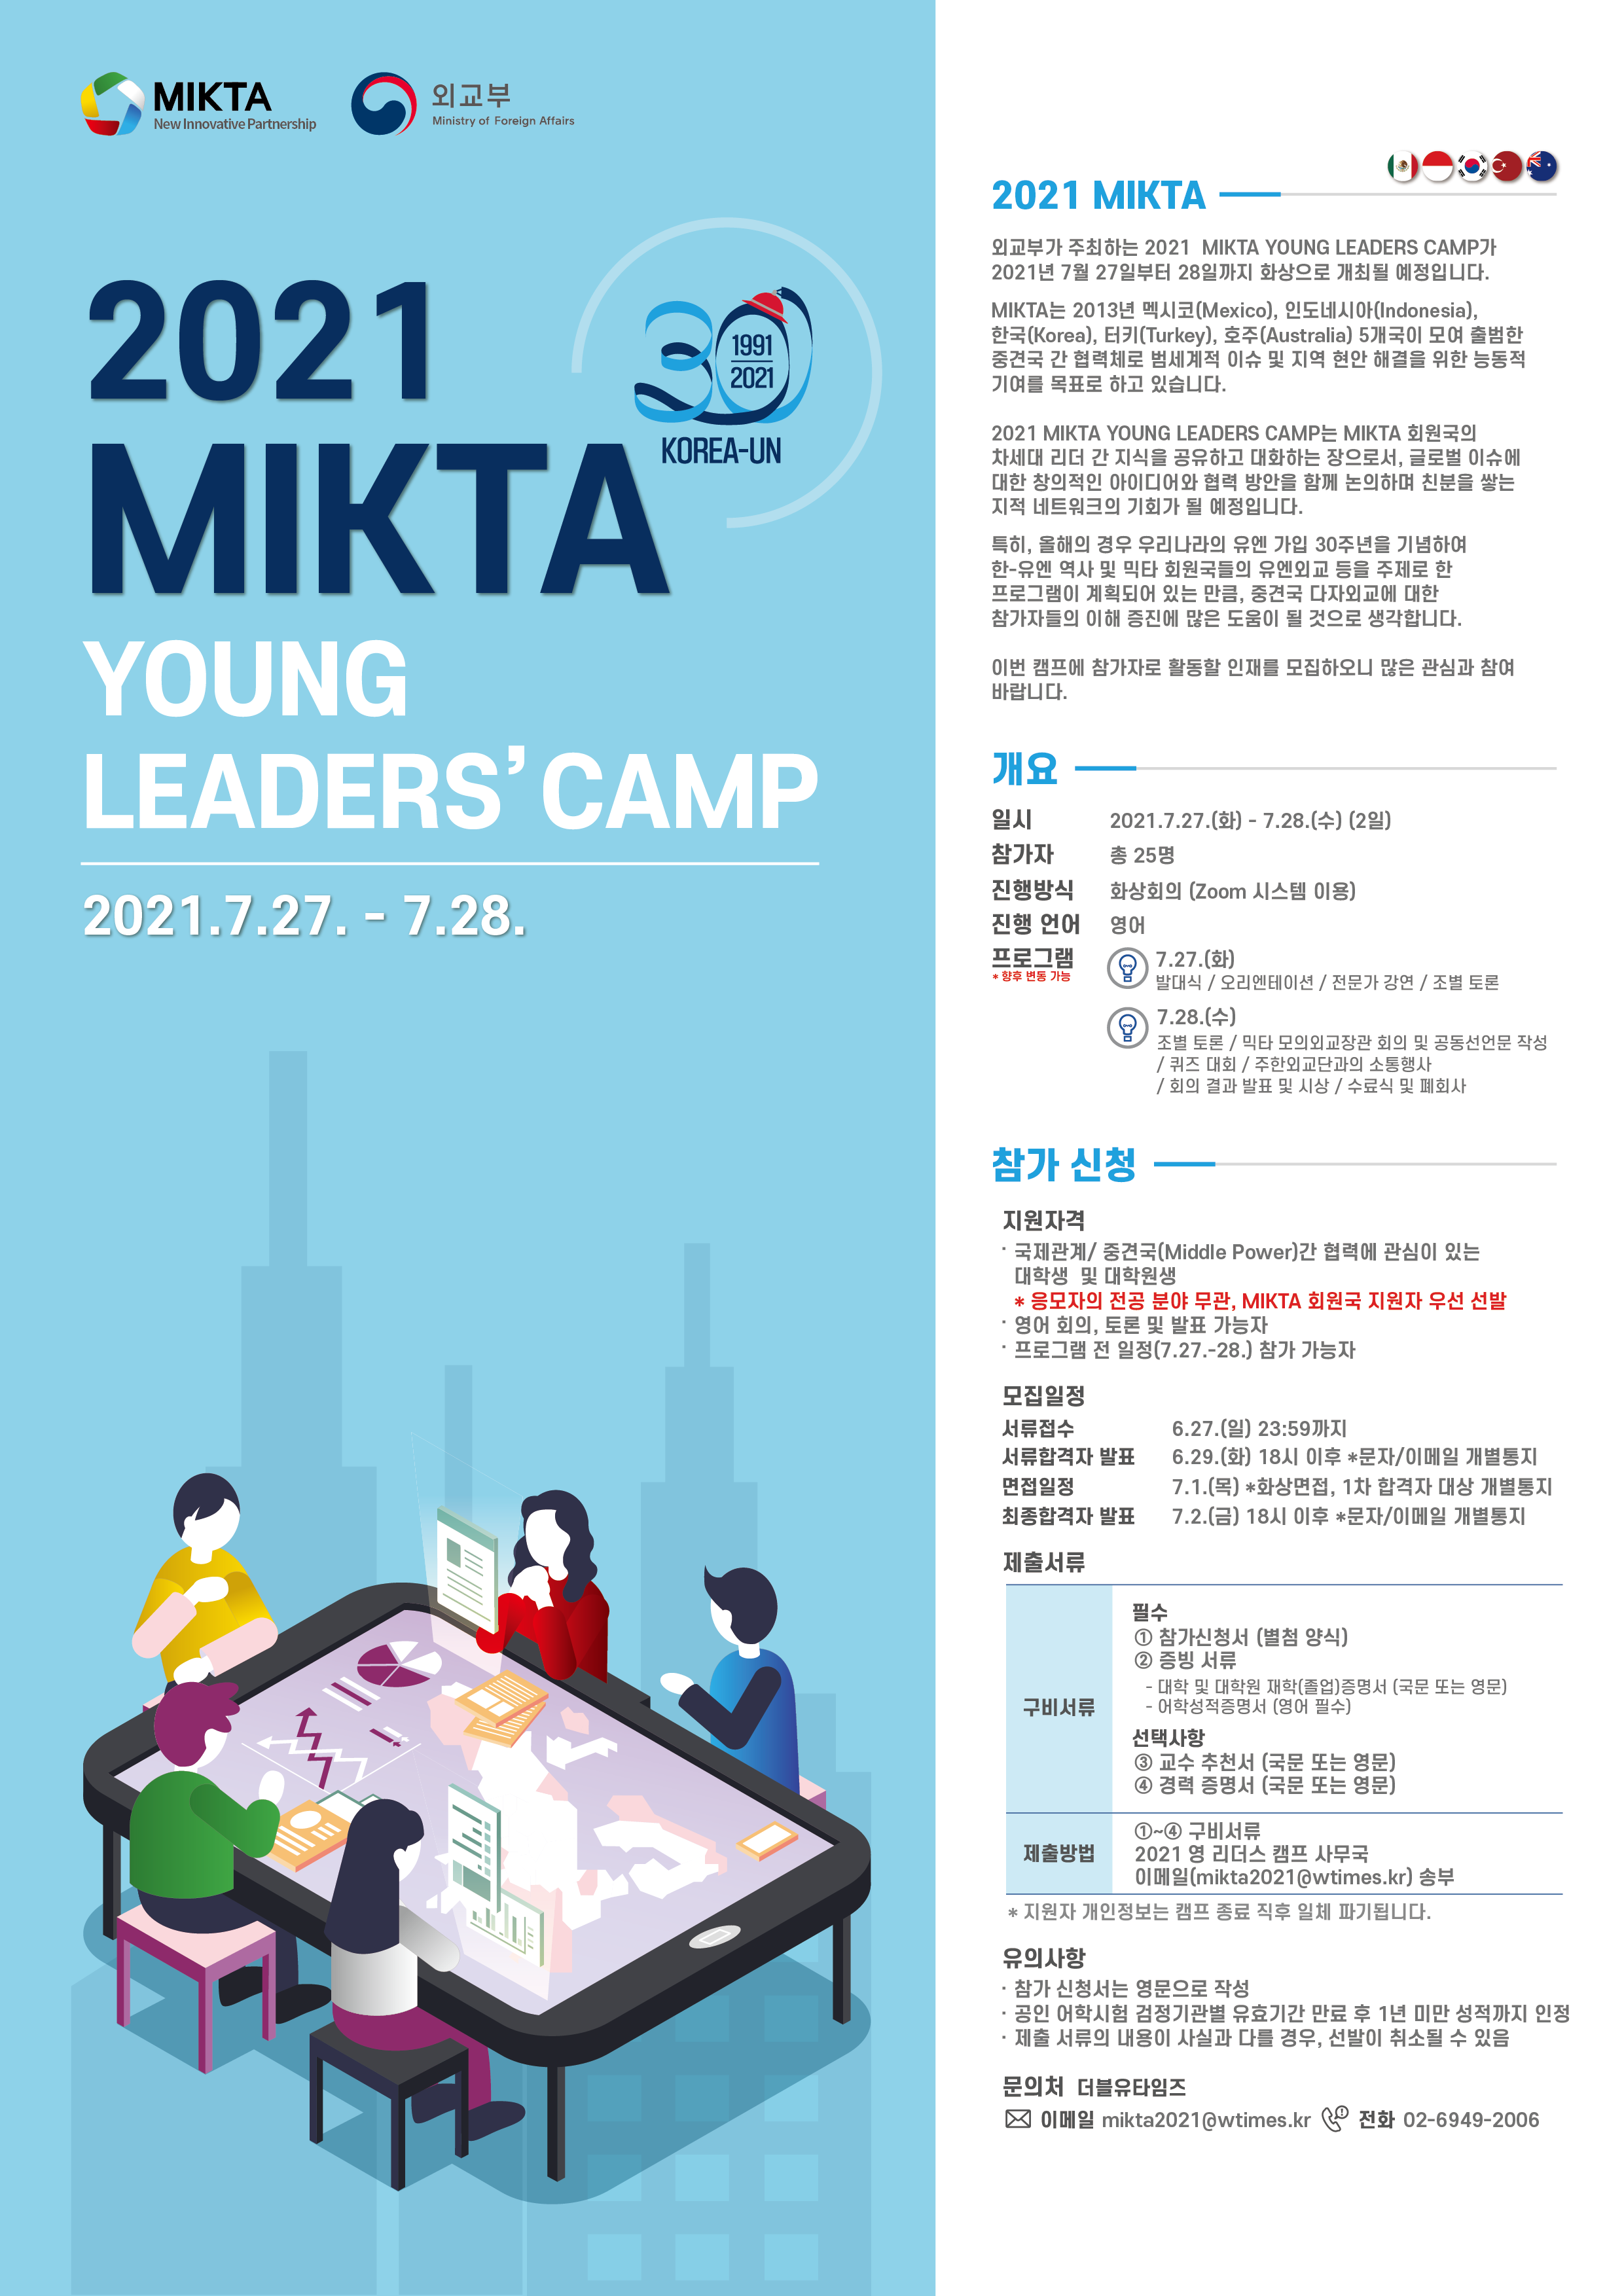 2021 믹타 영 리더스 캠프 참가자 선발 공지 - 새창 이동